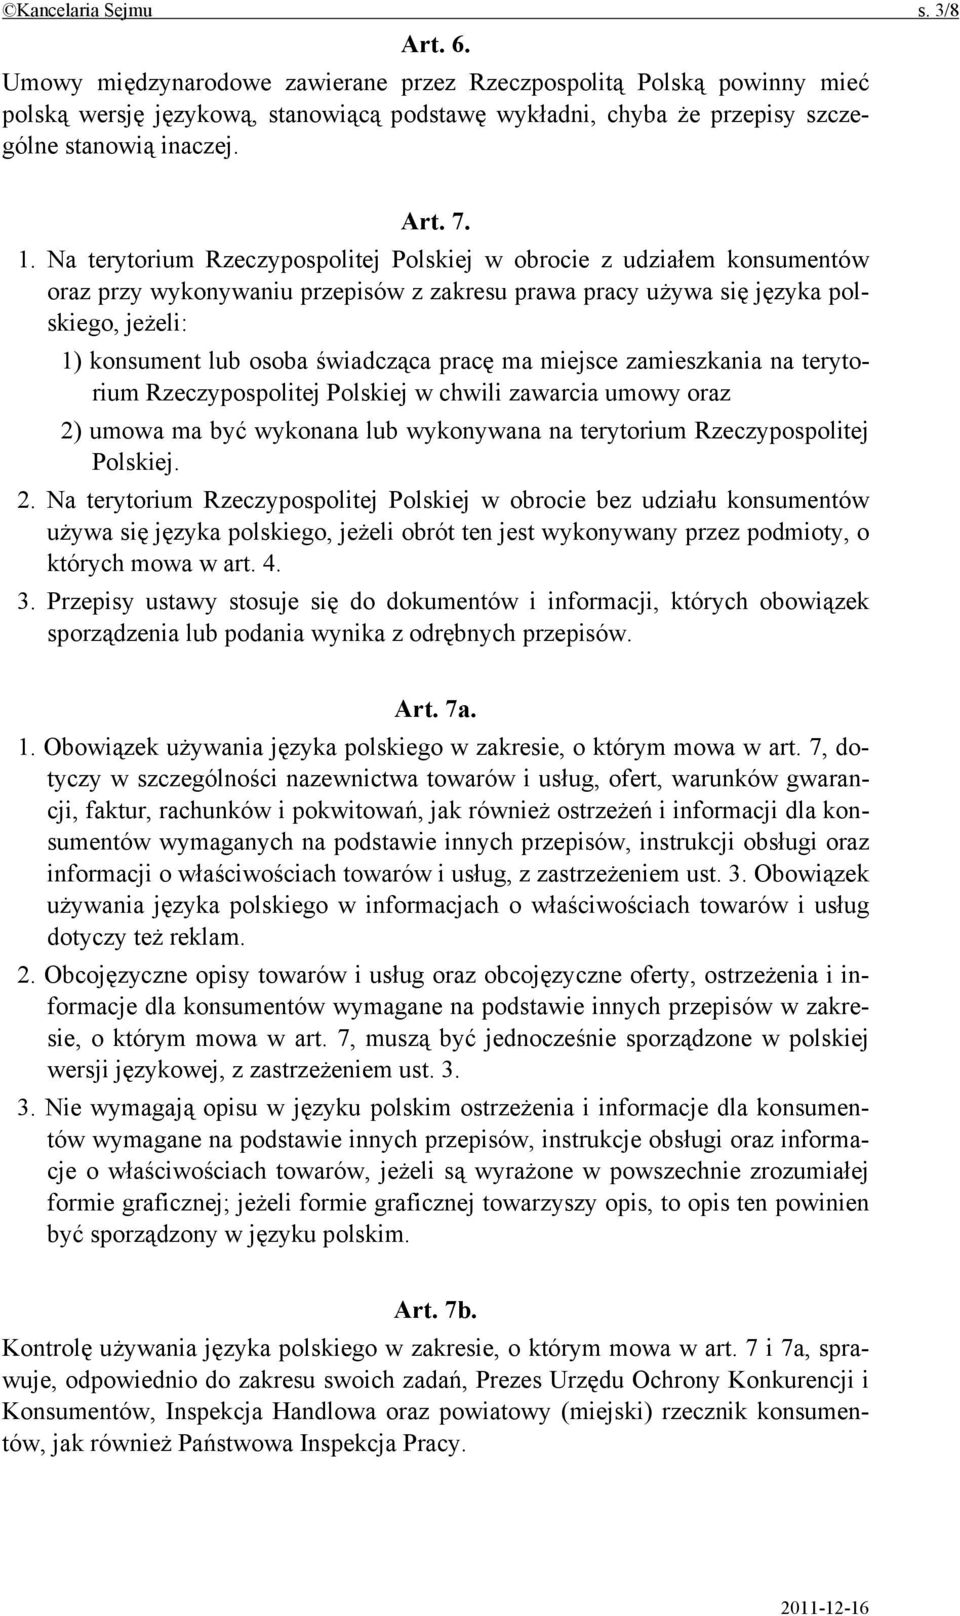 Na terytorium Rzeczypospolitej Polskiej w obrocie z udziałem konsumentów oraz przy wykonywaniu przepisów z zakresu prawa pracy używa się języka polskiego, jeżeli: 1) konsument lub osoba świadcząca